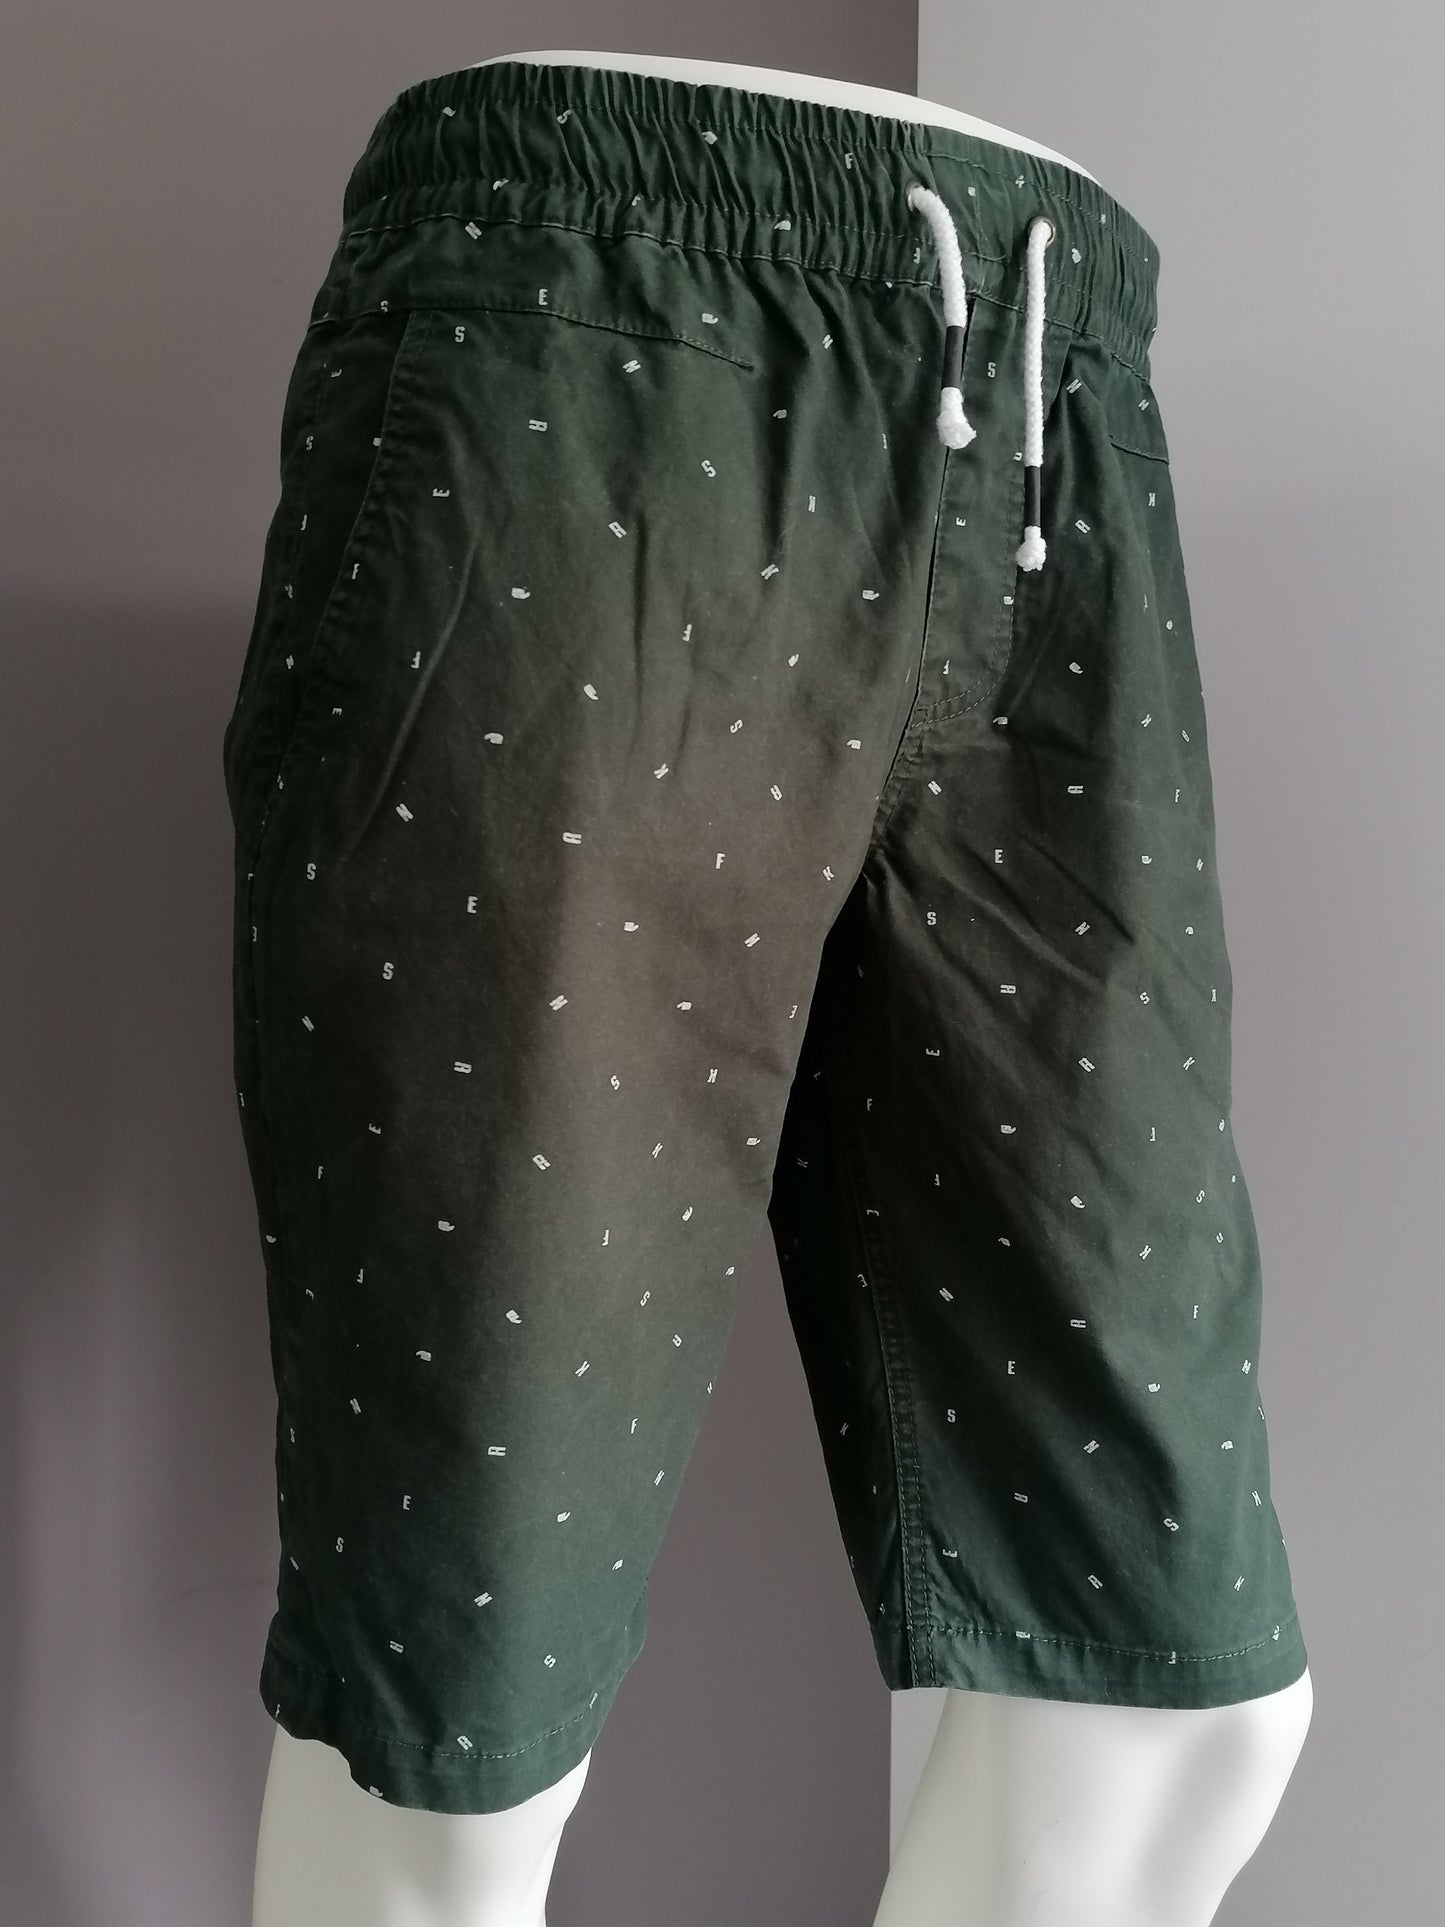 Pantalones cortos de zapatillas con banda elástica. Impresión de letra blanca verde. Talla M.